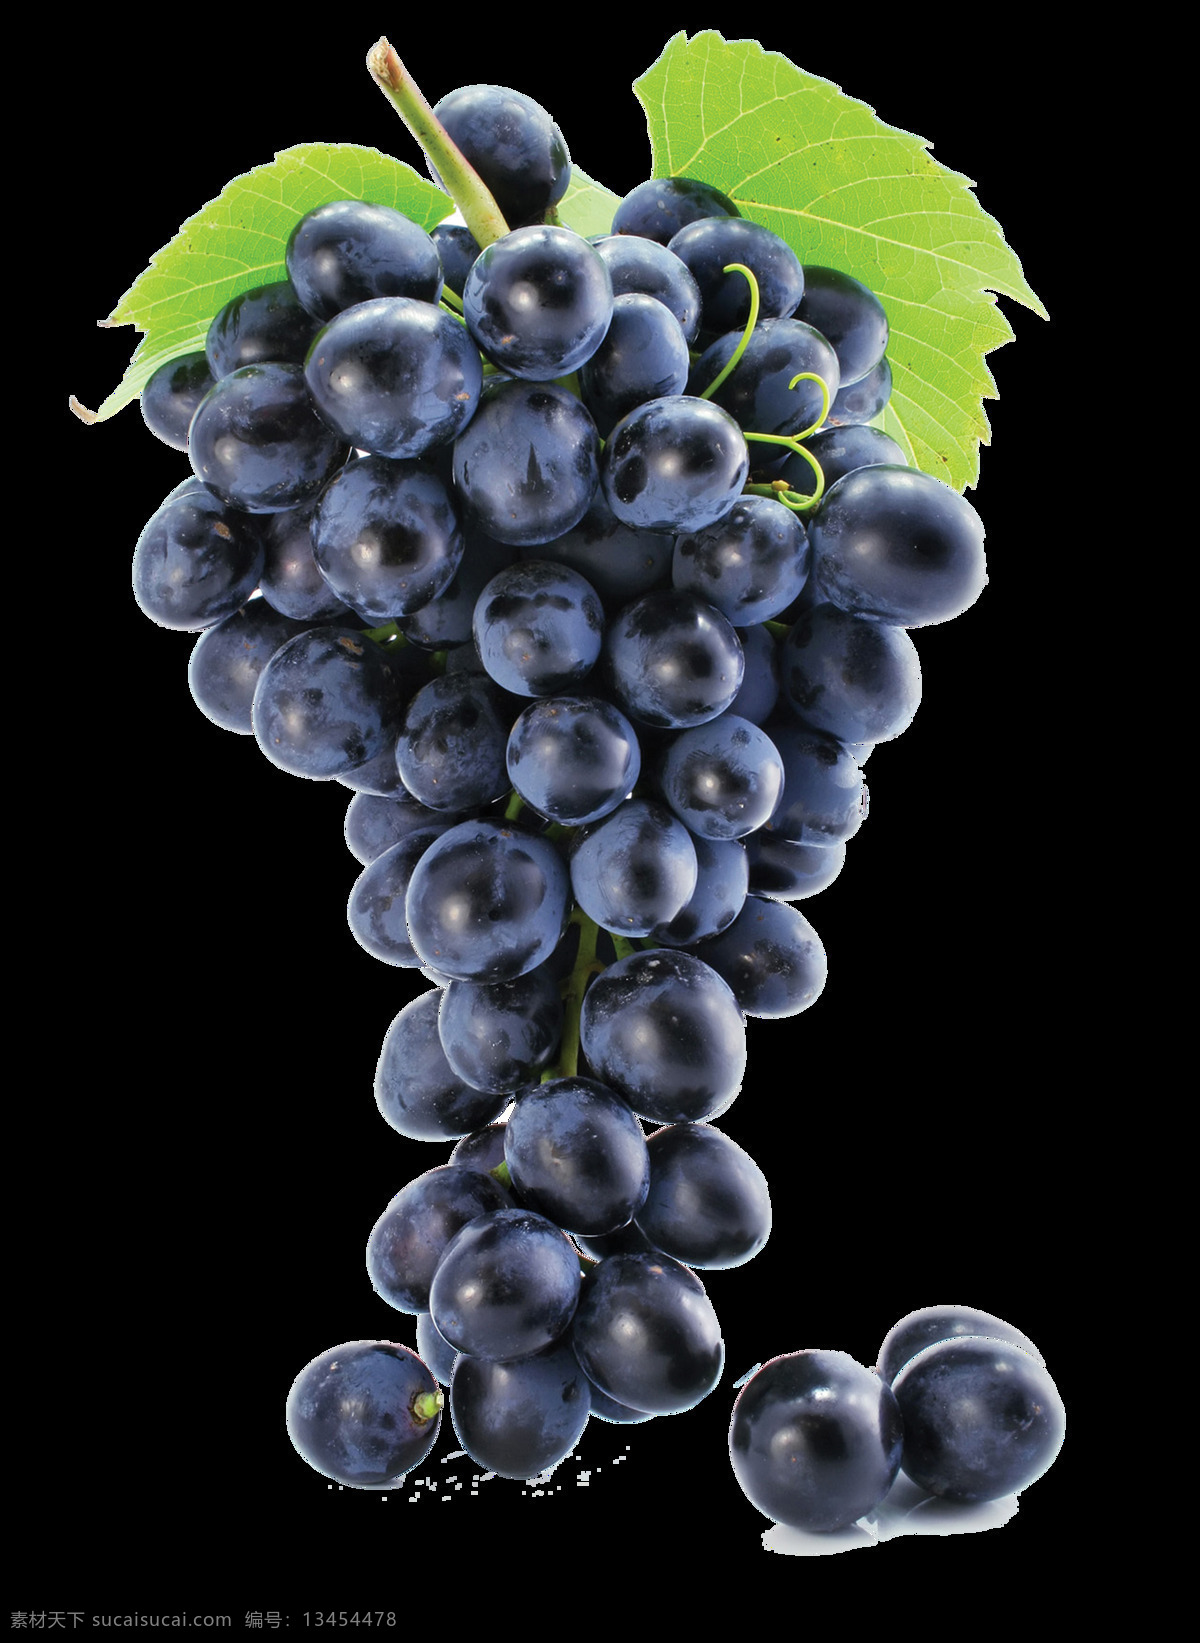 紫色 葡萄 实物 集合 紫葡萄 巨峰葡萄 新鲜葡萄 葡萄图片 一串葡萄 有机葡萄 葡萄图案